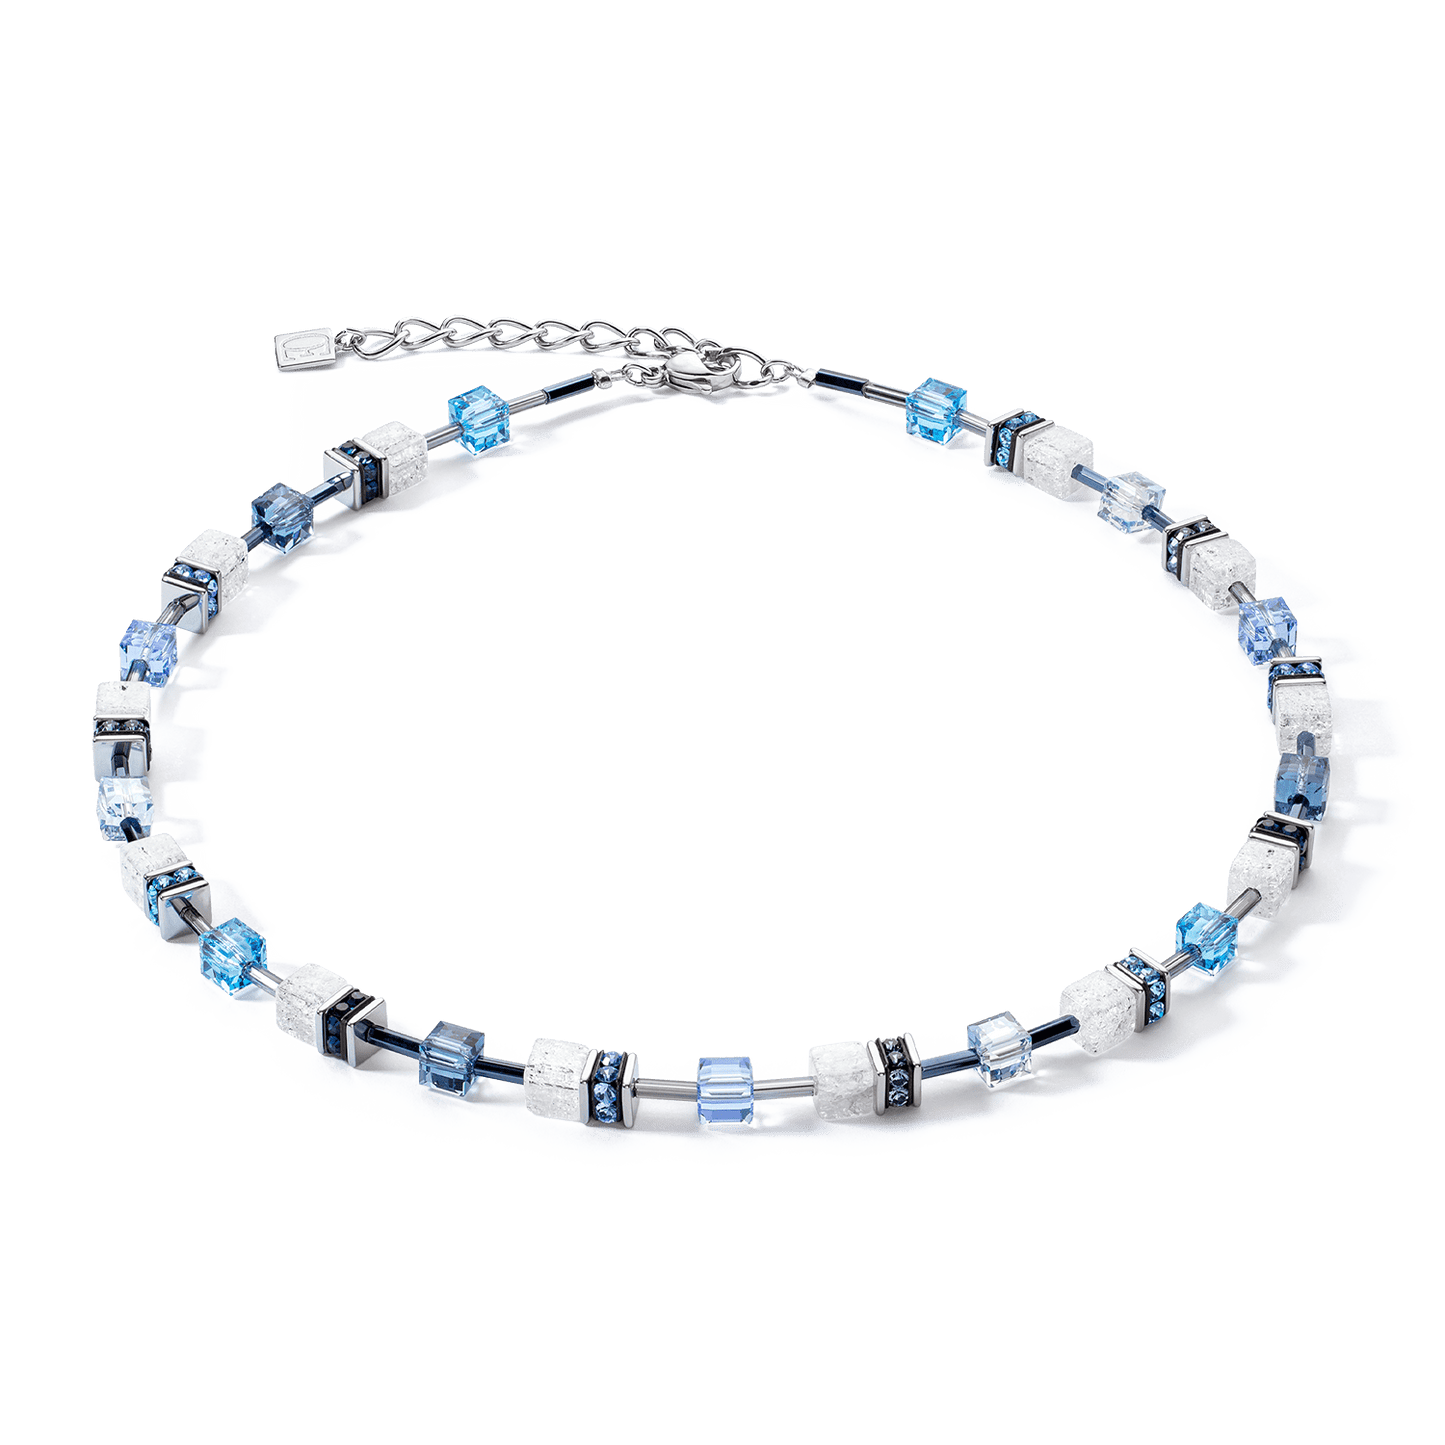 NKL GeoCube Iconic Blue & White Necklace